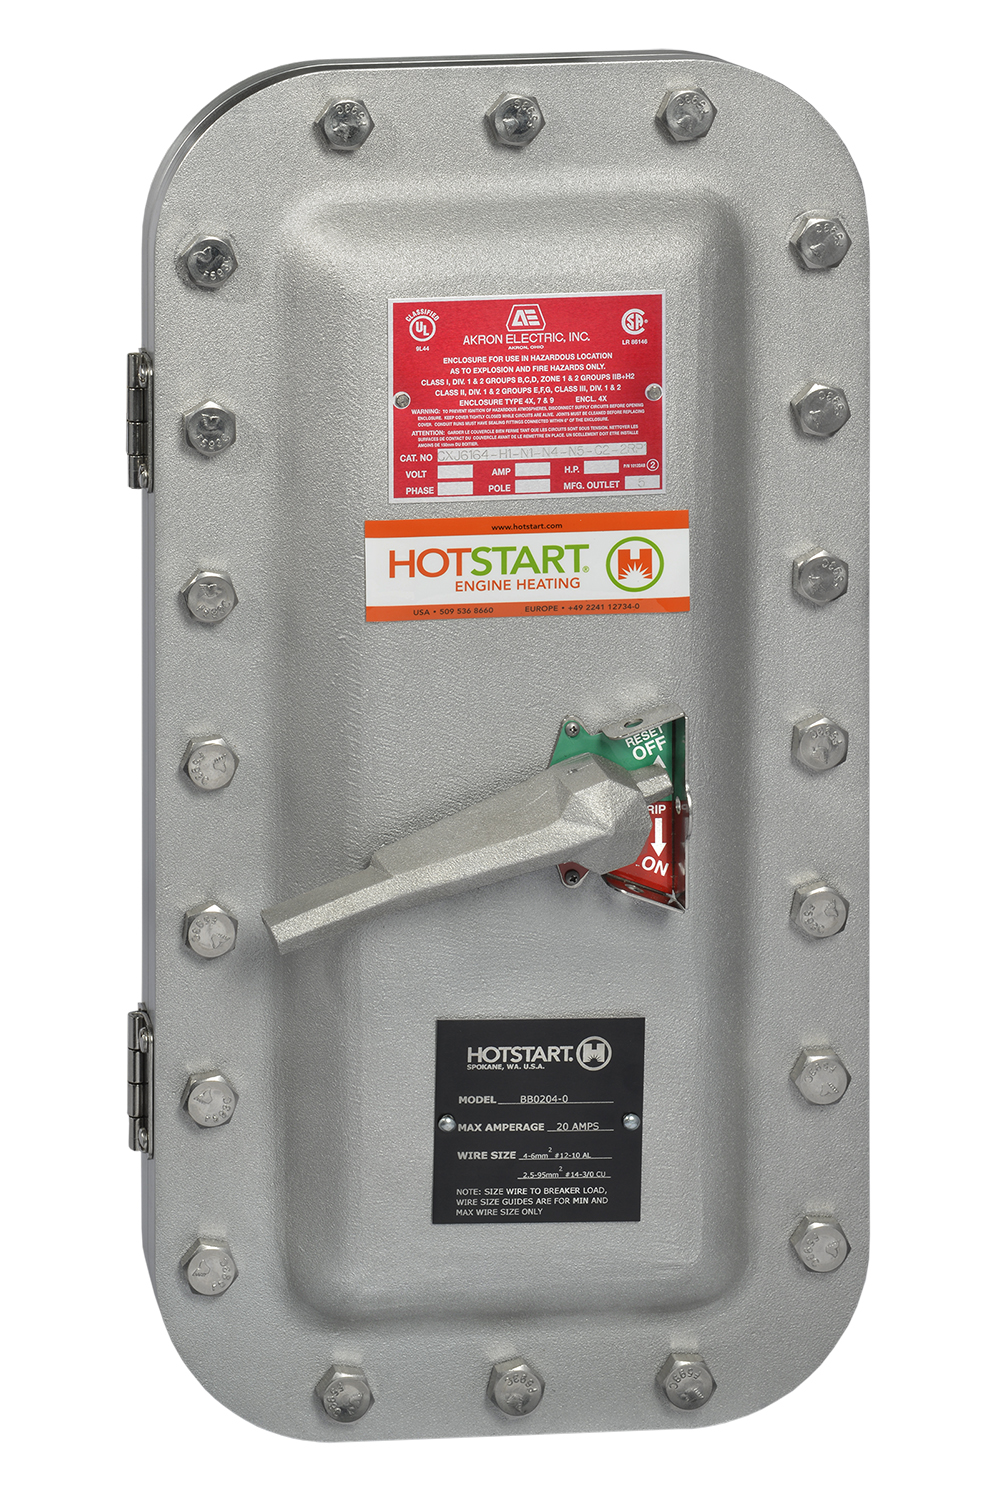 防爆 BB 断路器箱与用于石油天然气应用的 Hotstart 危险地带可用的加热系统配合使用时， 能够提供断开点和过流保护。